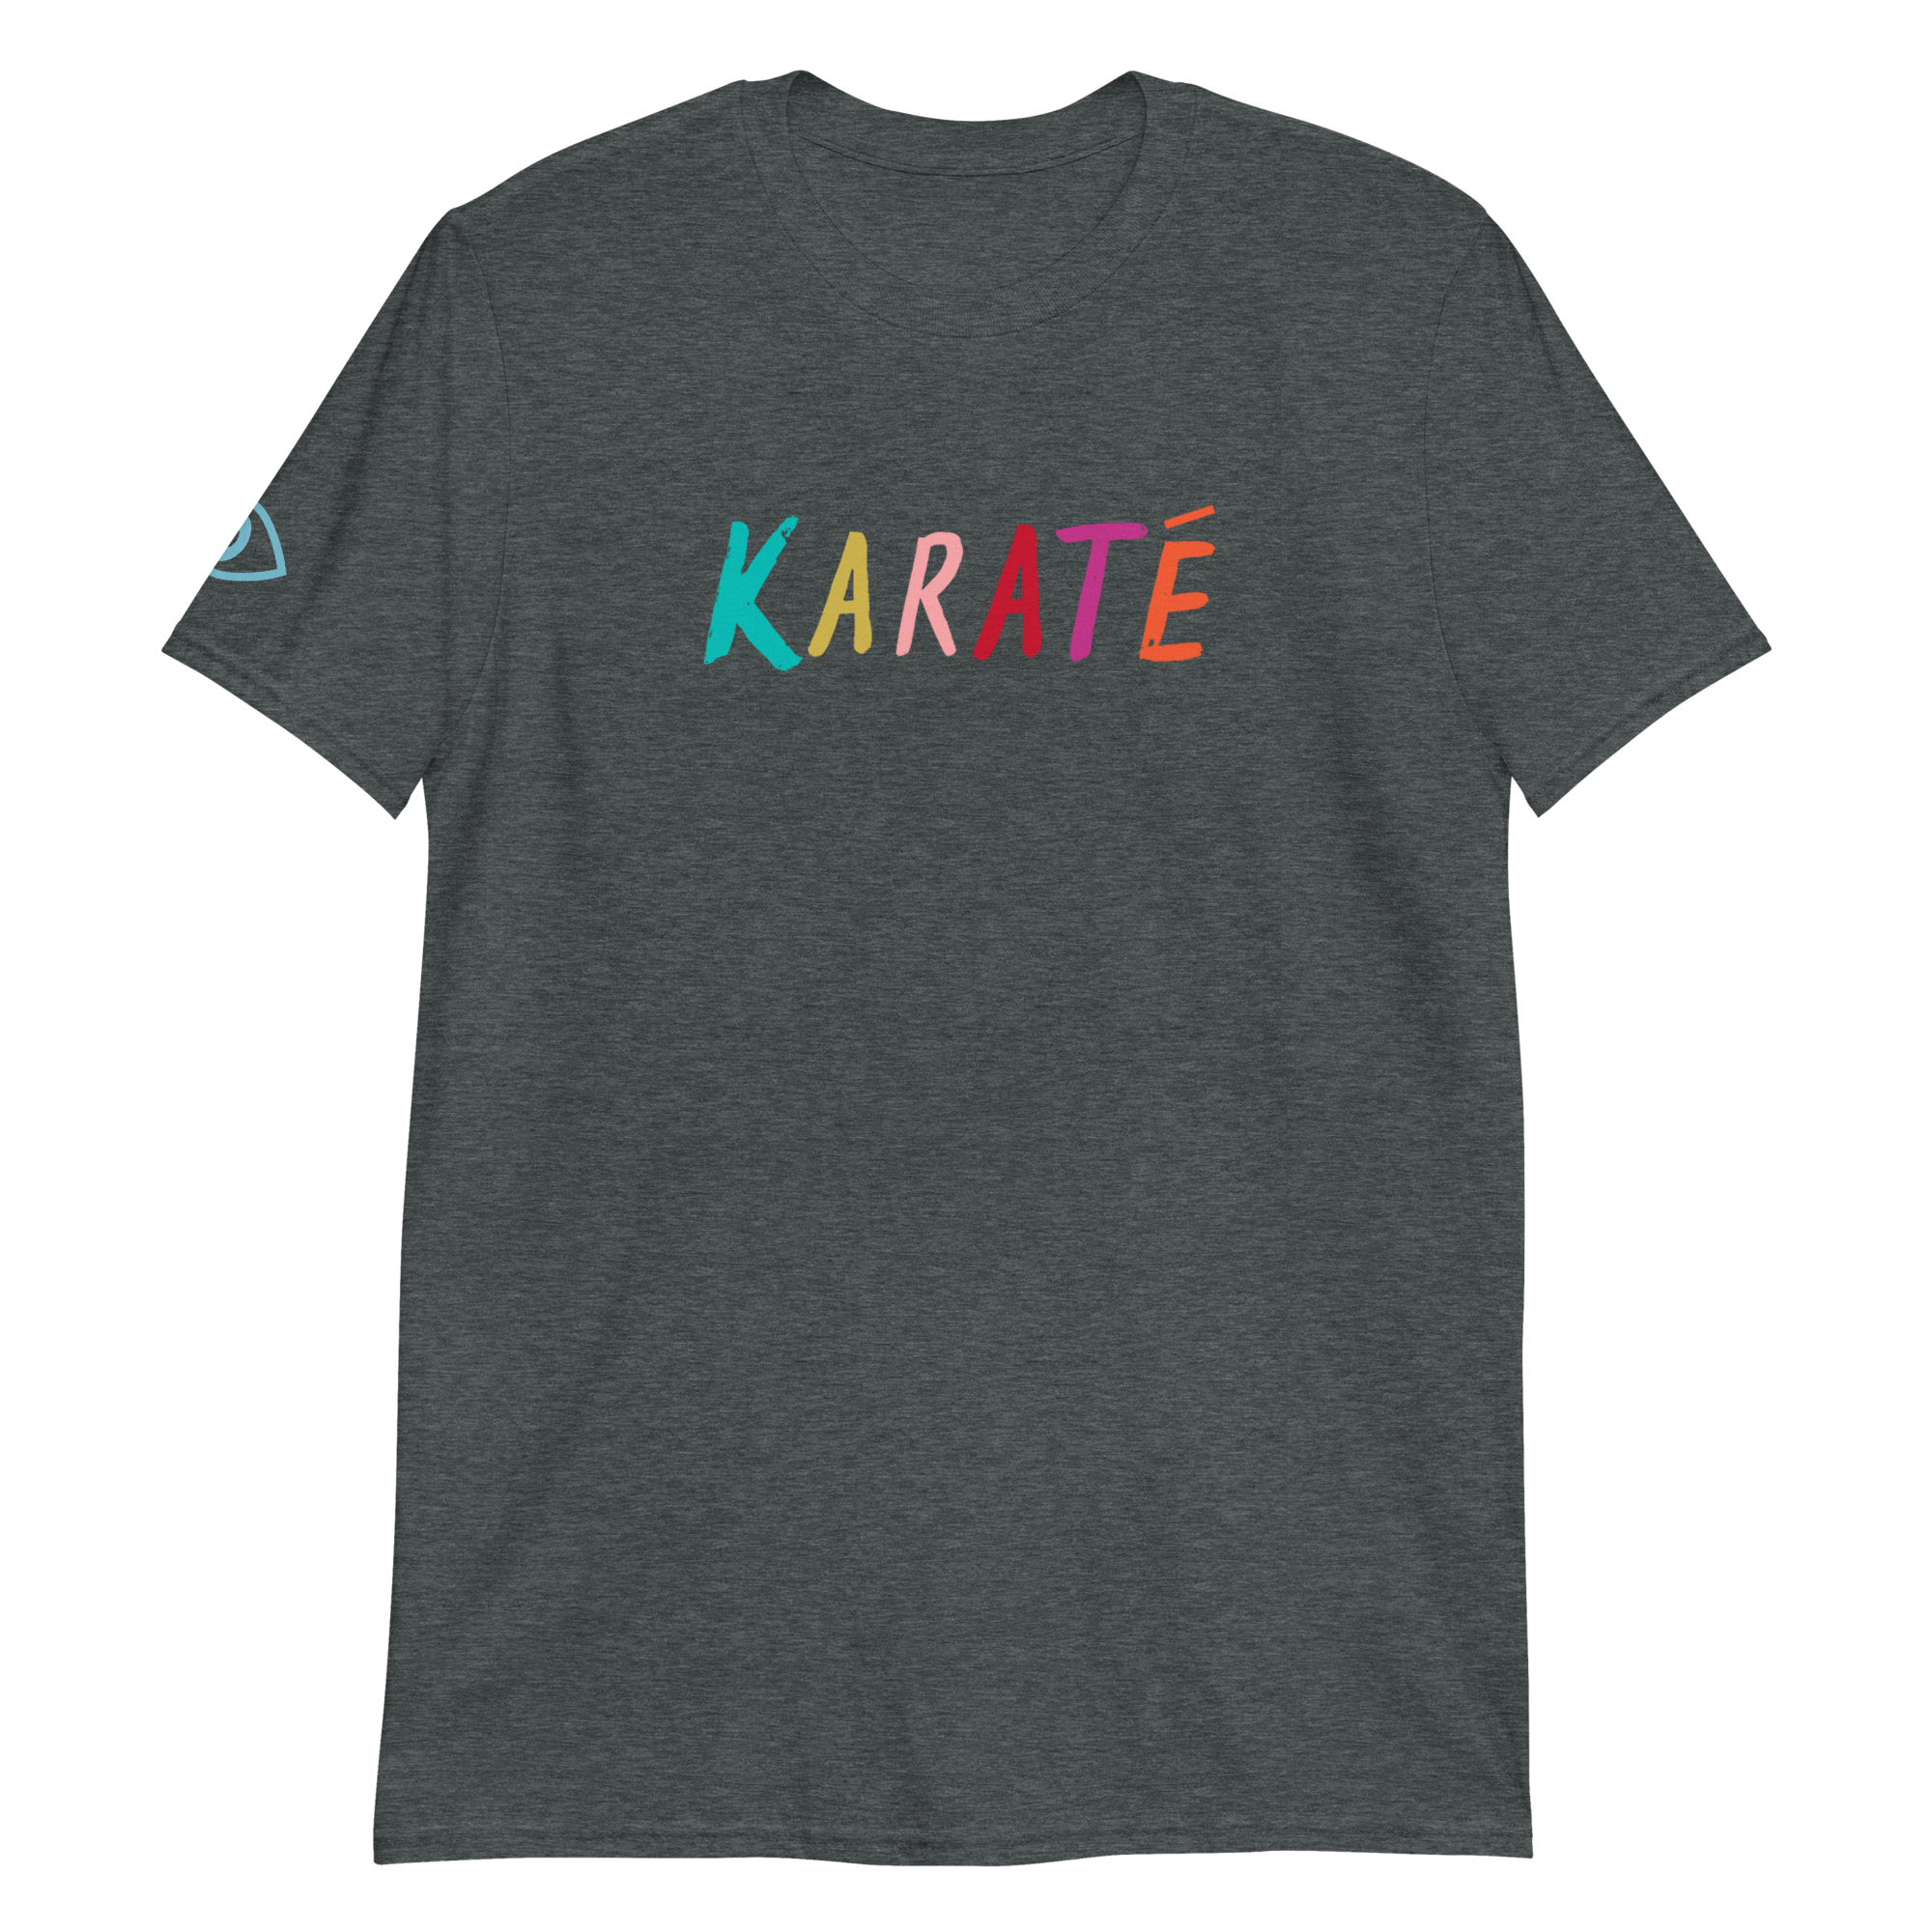 French Karate T-shirt in Dark Heather Gray, Unisex